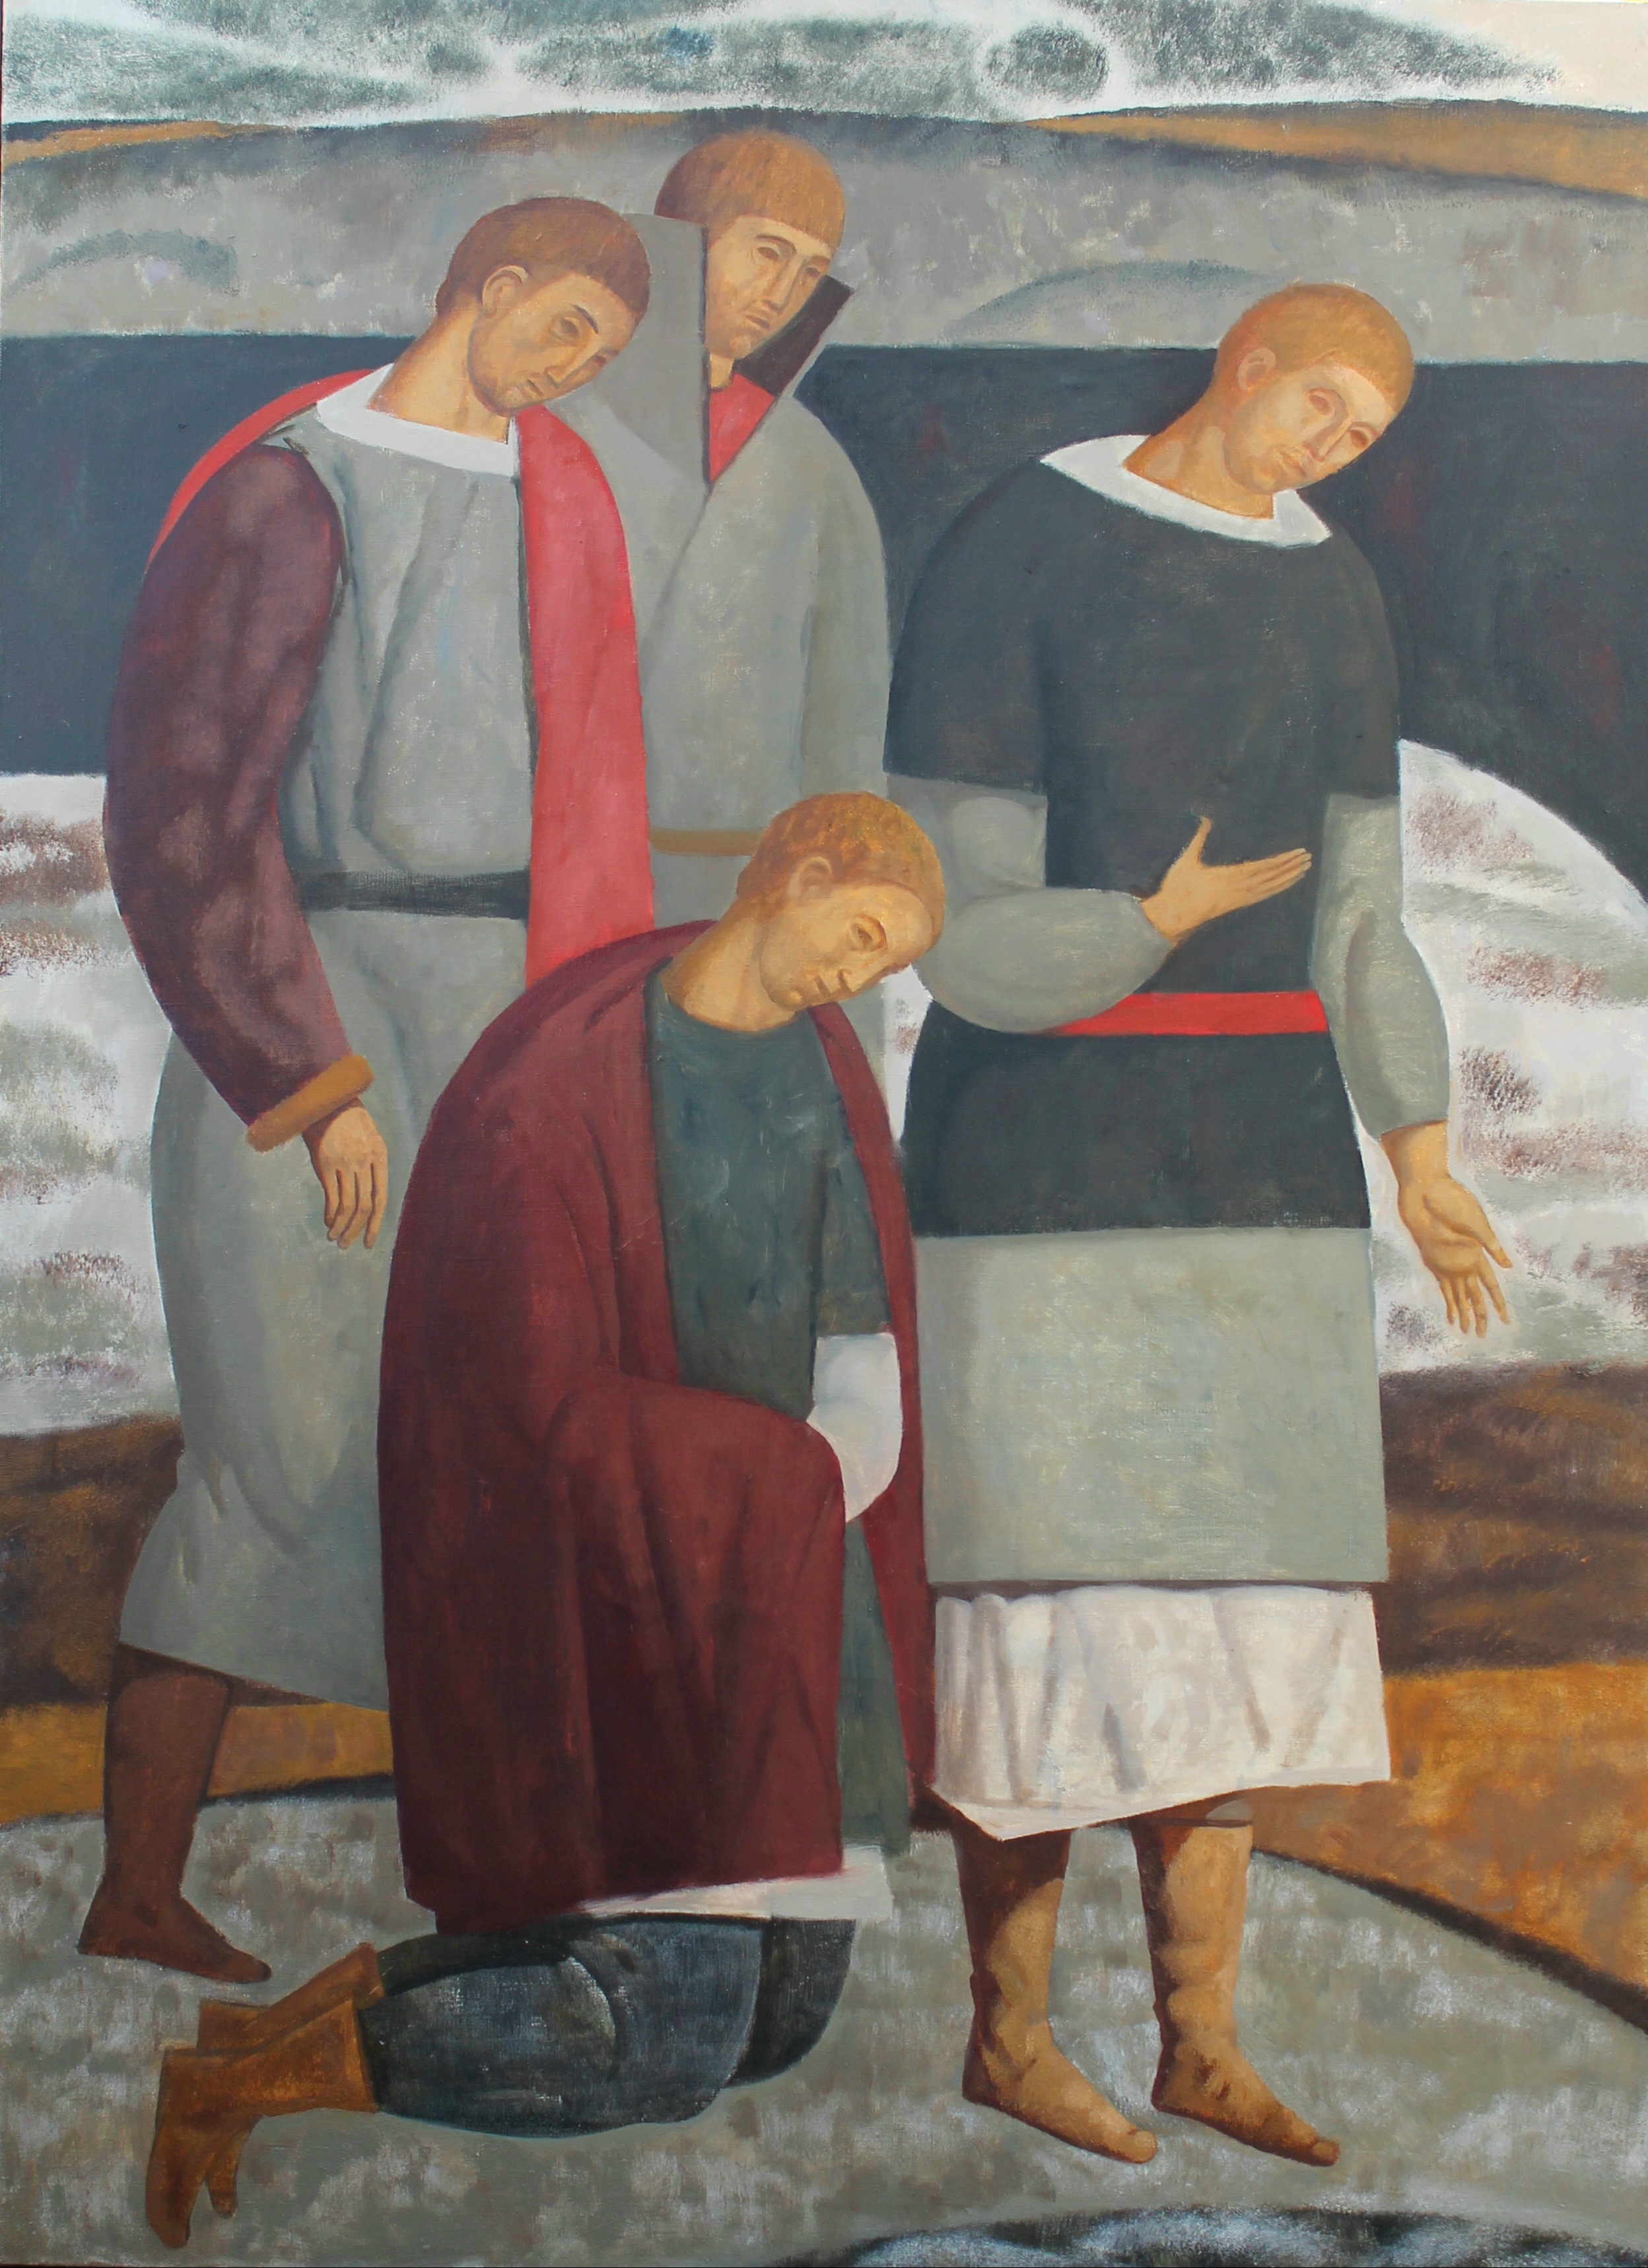 The Prayer - 1, Mary Dobrovolskaya, Buy the painting Oil